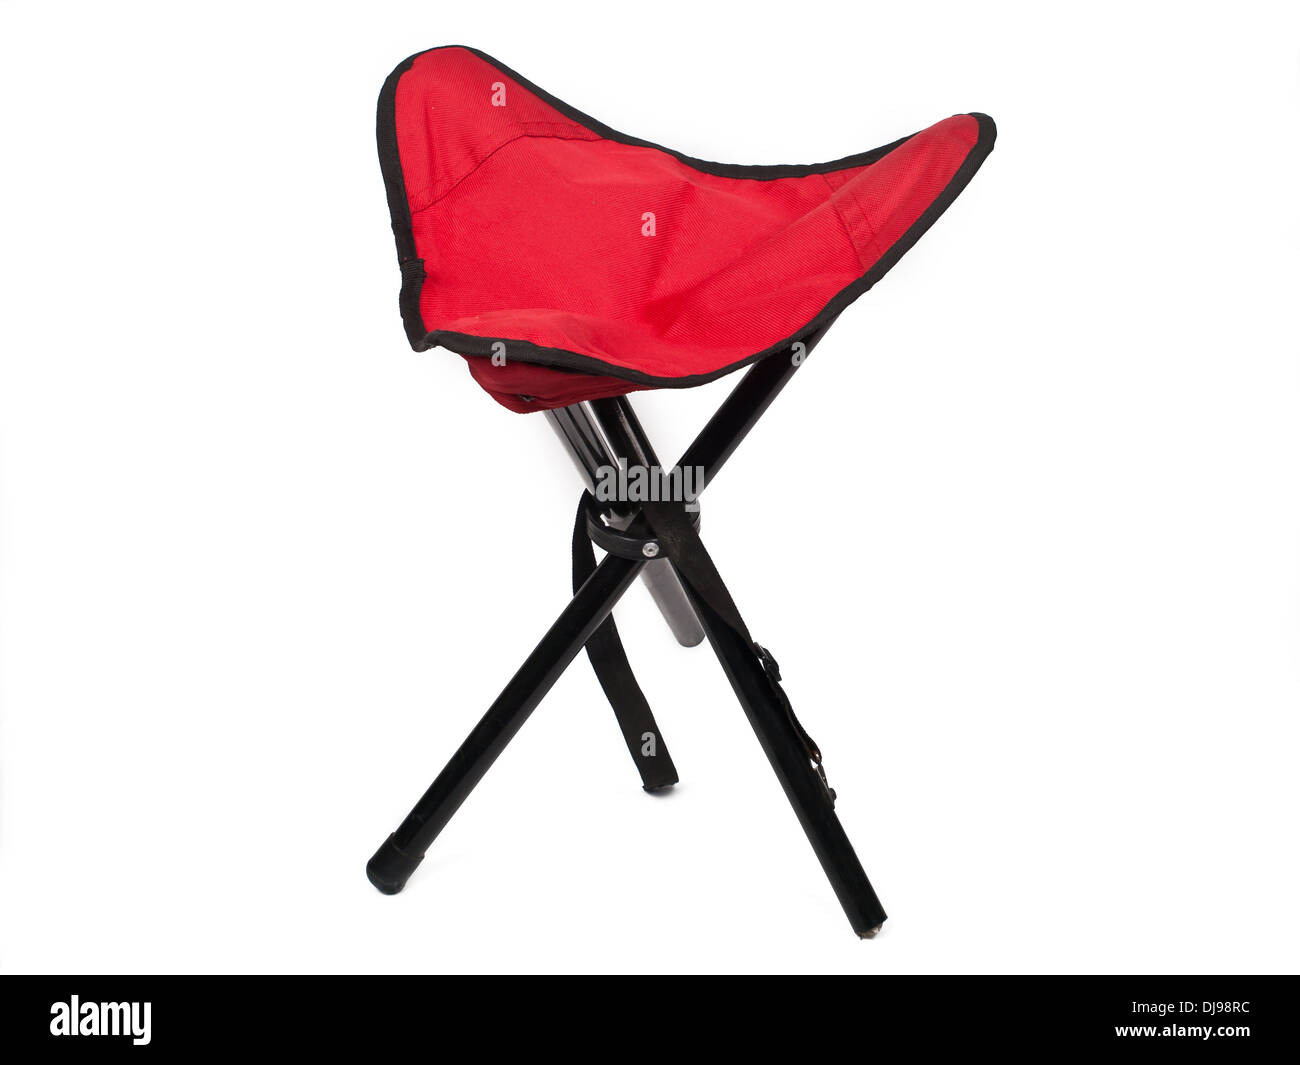 tripod hunting stool isolated on white background Stock Photo